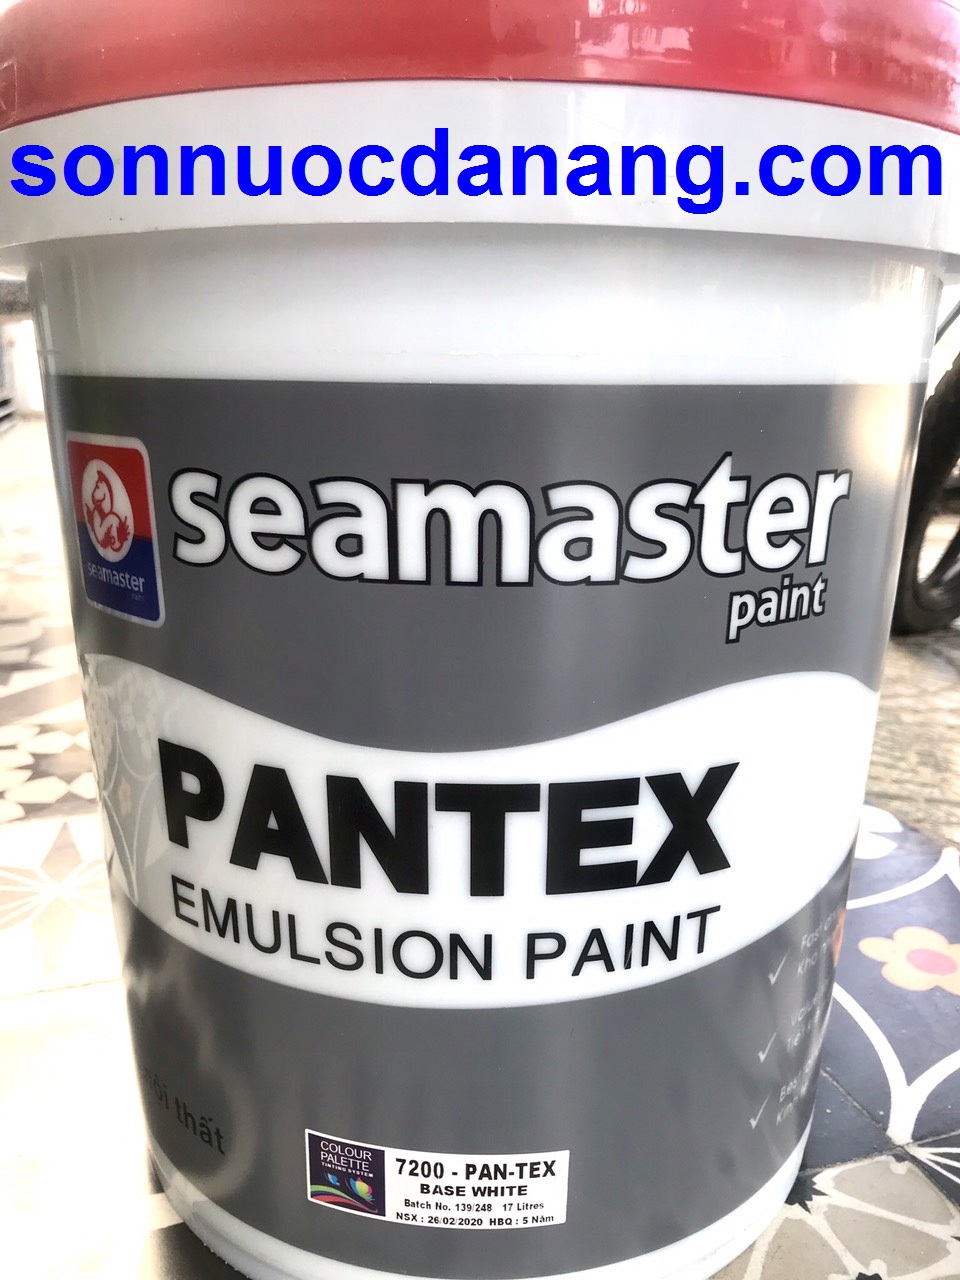 Sơn nước nội thất giá rẽ Seamaster Pantex tại Đà Nẵng và các tỉnh. Sơn nước Seamaster Pantex 7200 là sản phẩm sơn nước chuyên dùng cho nội thất, sơn được khách hàng lựa chọn nhiều vì được đáng giá là dòng sơn kinh tế.
Sơn có gốc Acrylic Co-polymer, được điều chế với công thức đặc biệt dùng để sơn bề mặt tường nội thất. sơn rất dễ sử dụng và cho bề mặt mờ, khả năng che lấp cao.